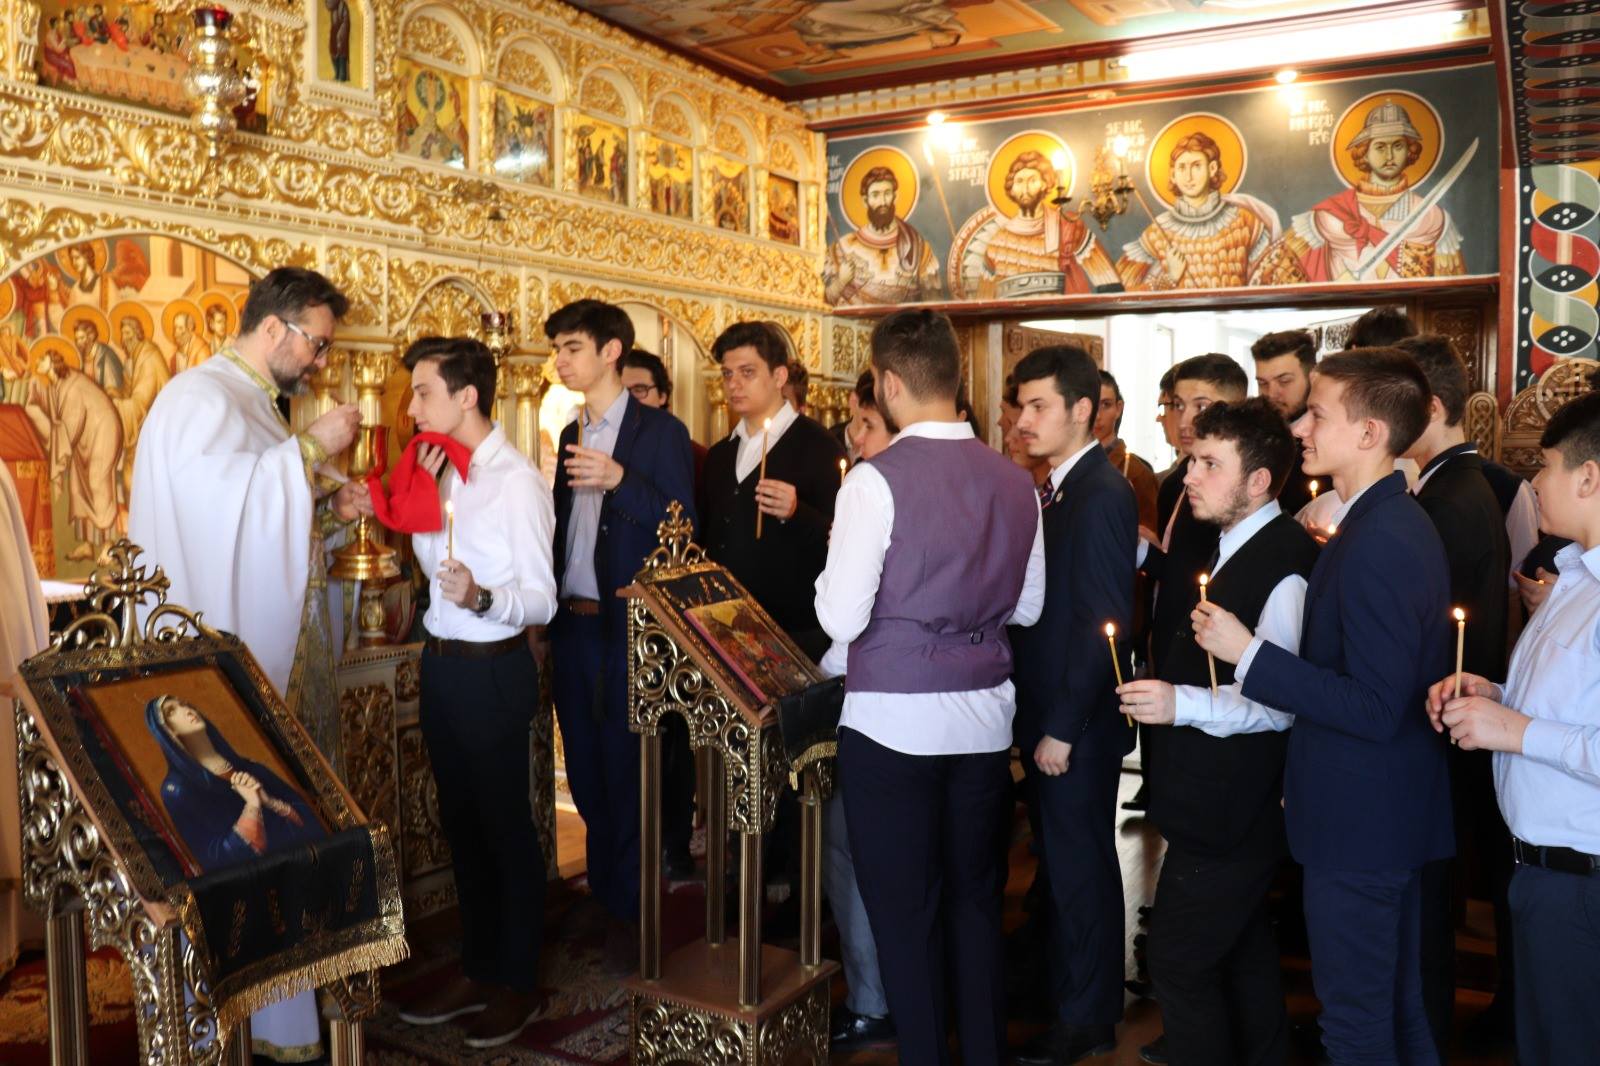 Zi de aleasă bucurie duhovnicească: Împărtășirea elevilor Seminarului Teologic Ortodox București